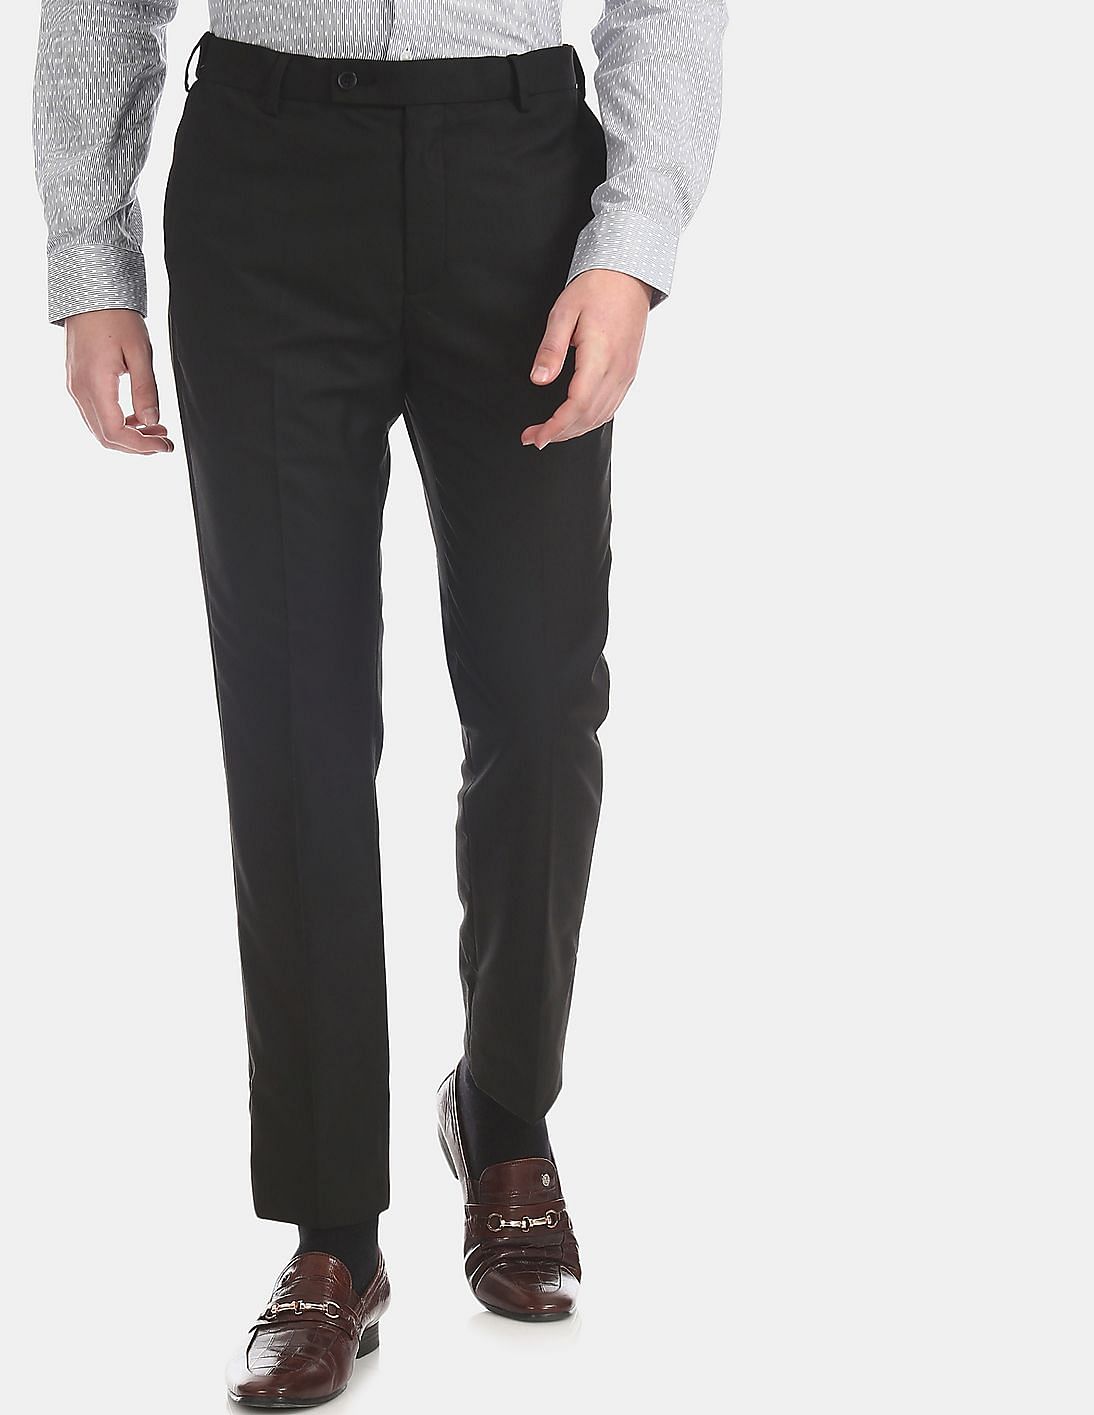 Buy Men Black Autoflex Waist Patterned Trousers online at NNNOW.com